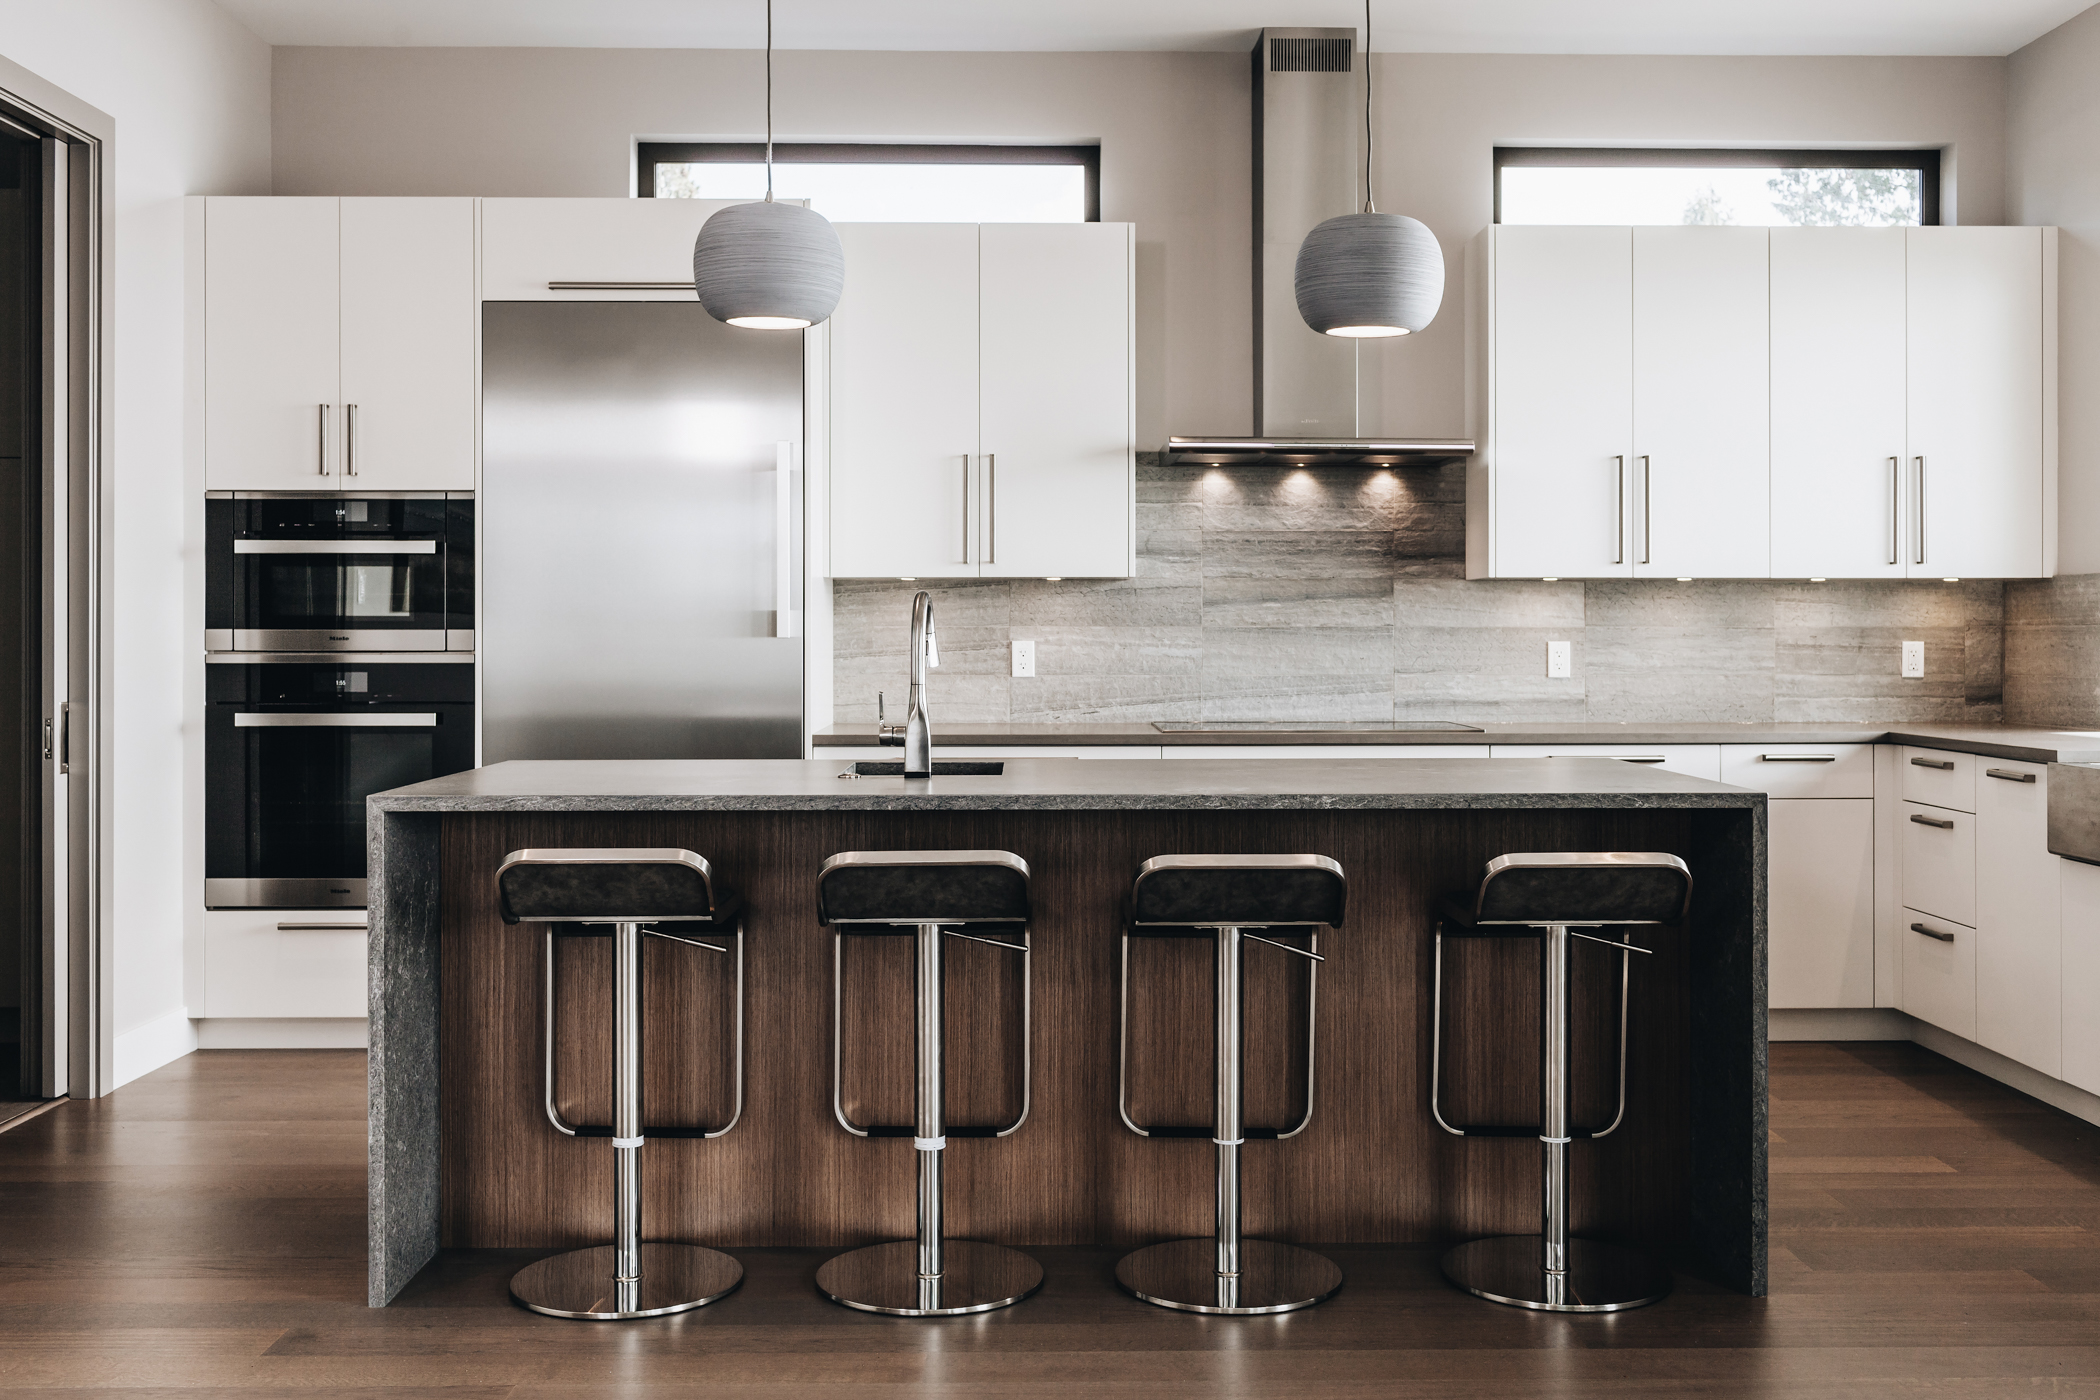 Increase Your Kitchen Space With Kitchen Islands | Kitchen Art Design